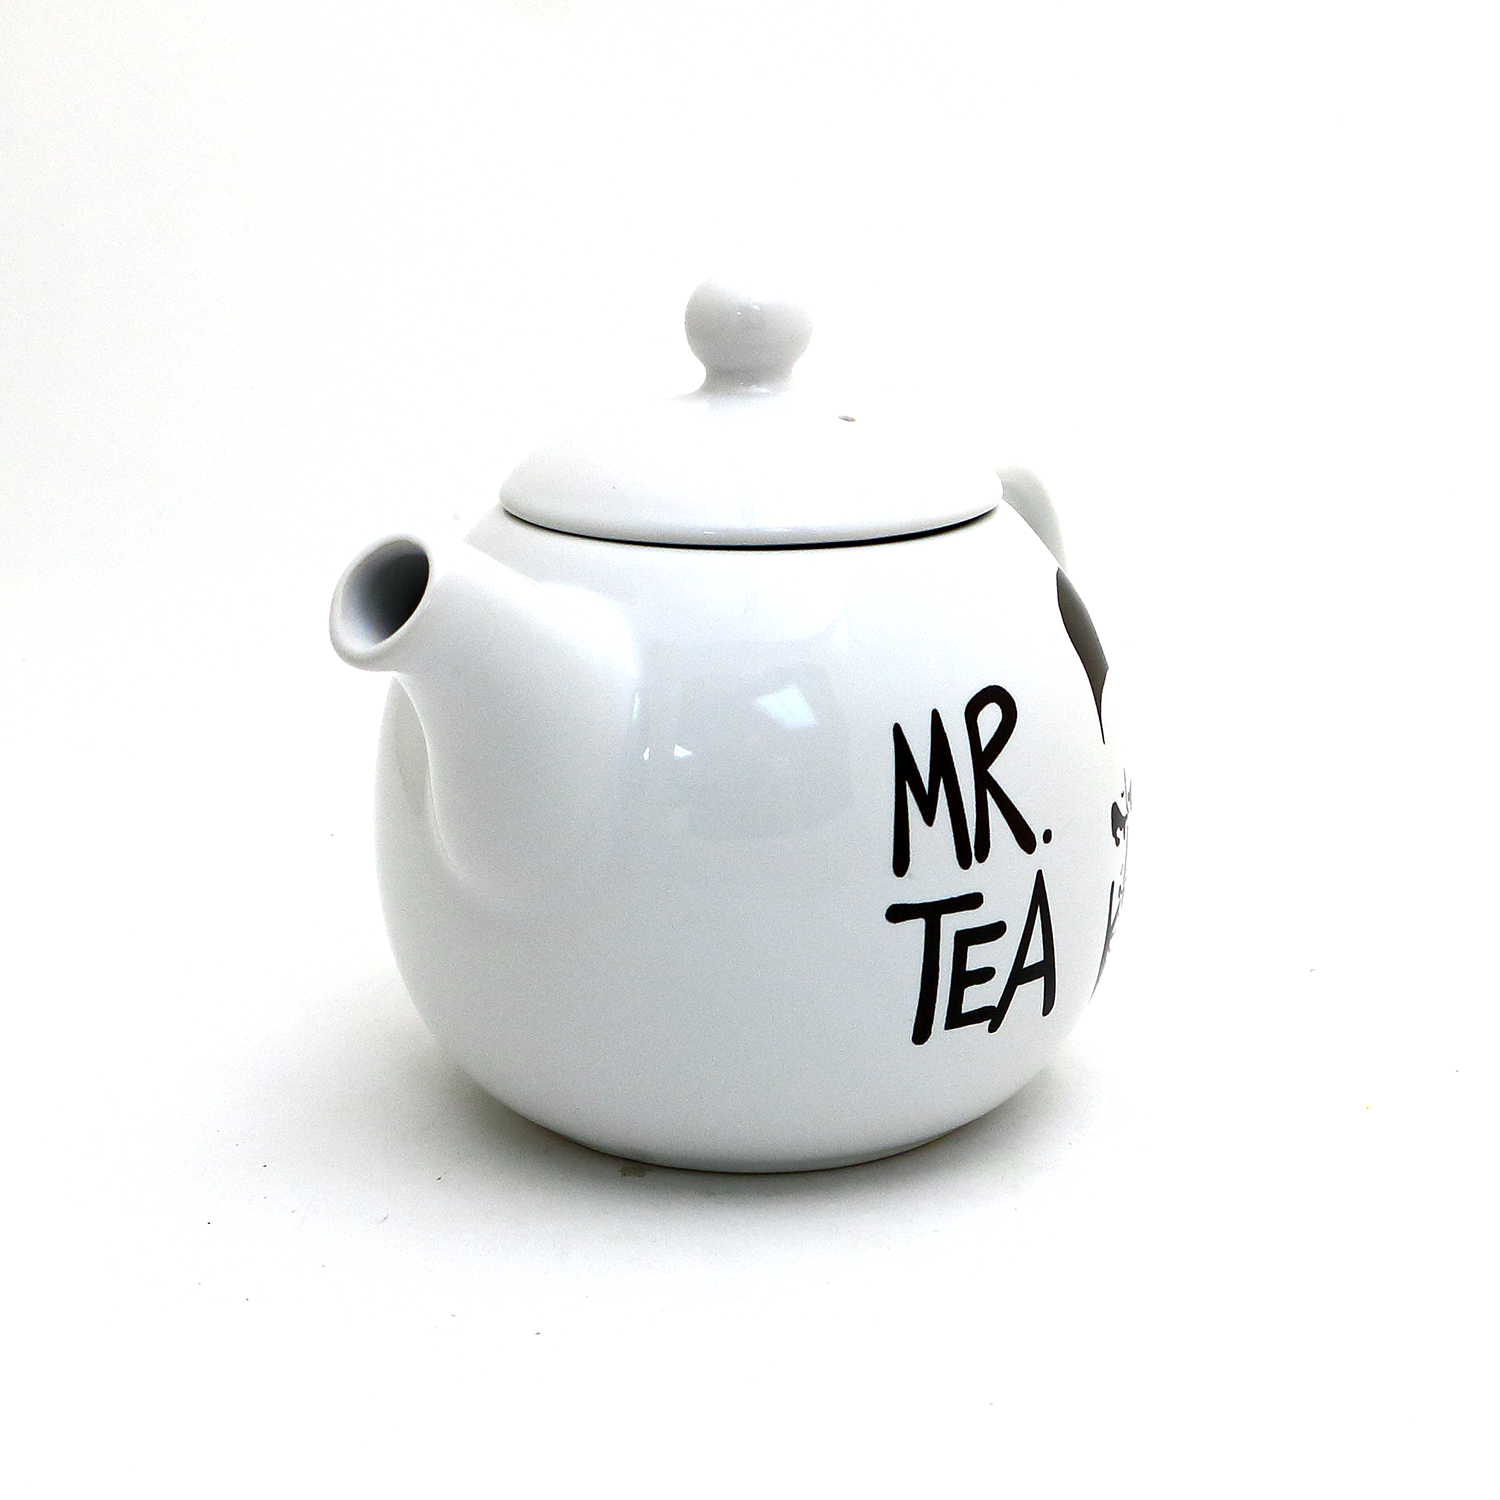 Mind Reader Individual Ceramic Tea Set Teapot and Teacup with Lid and  Saucer,12 oz Pot, 10 oz Mug, White 